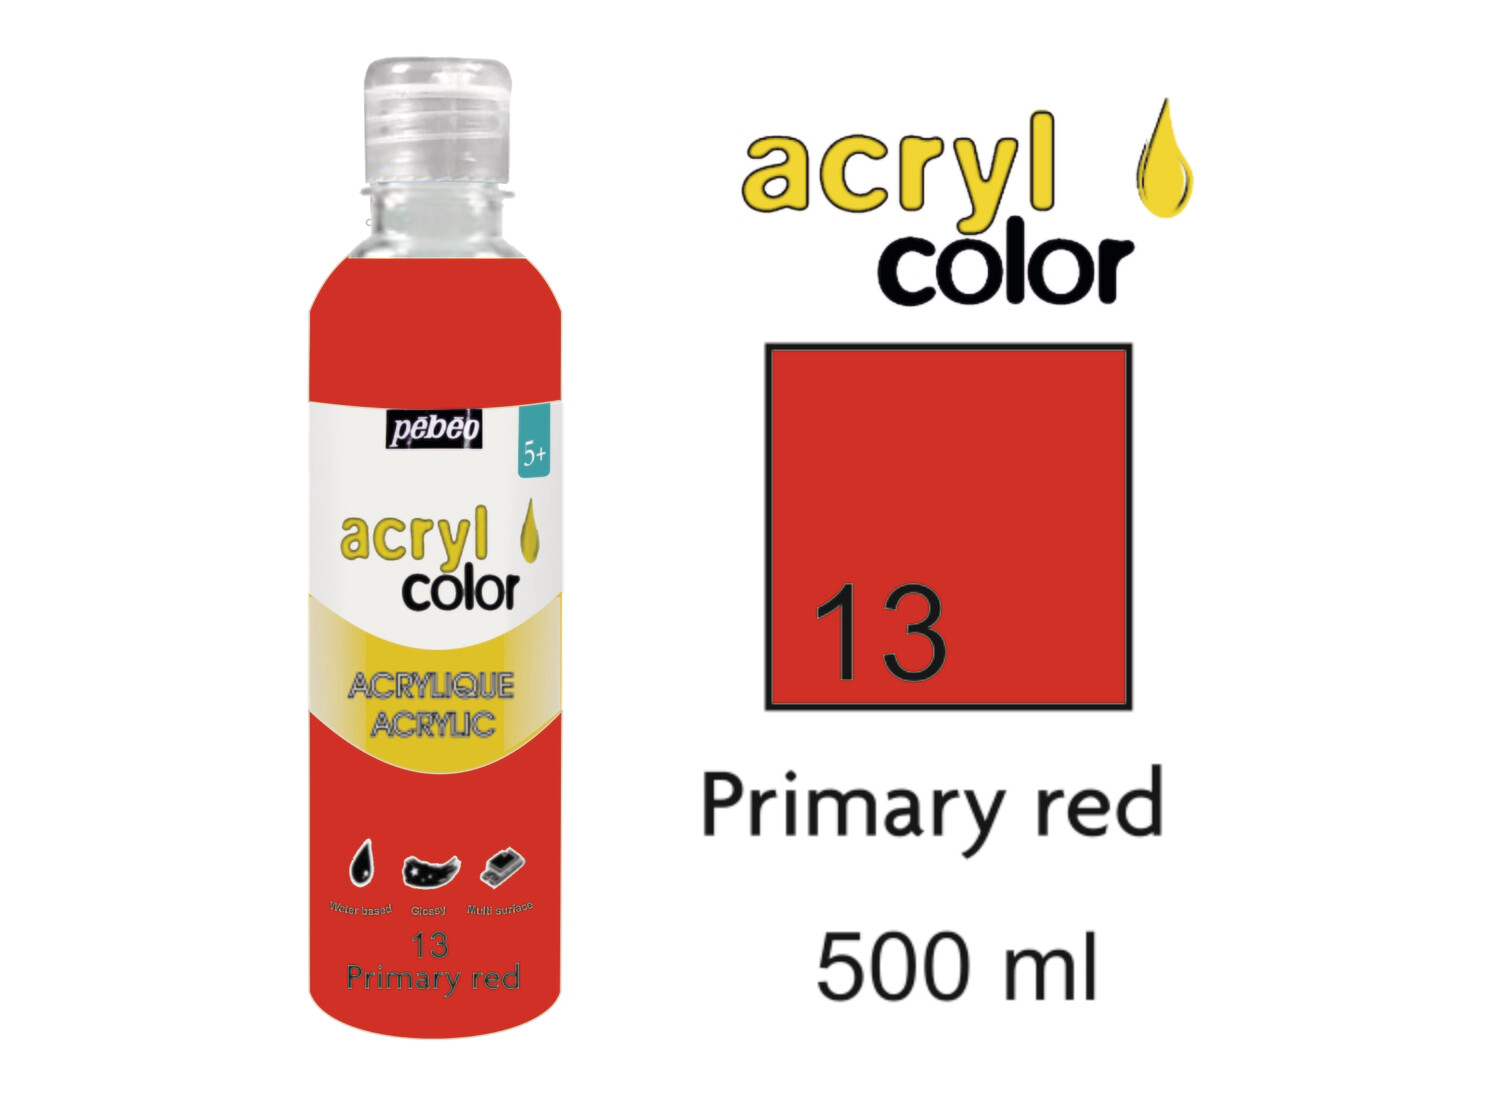 Acrylcolor Liquid Acrylic 500 ml, Primary Red, No. 13